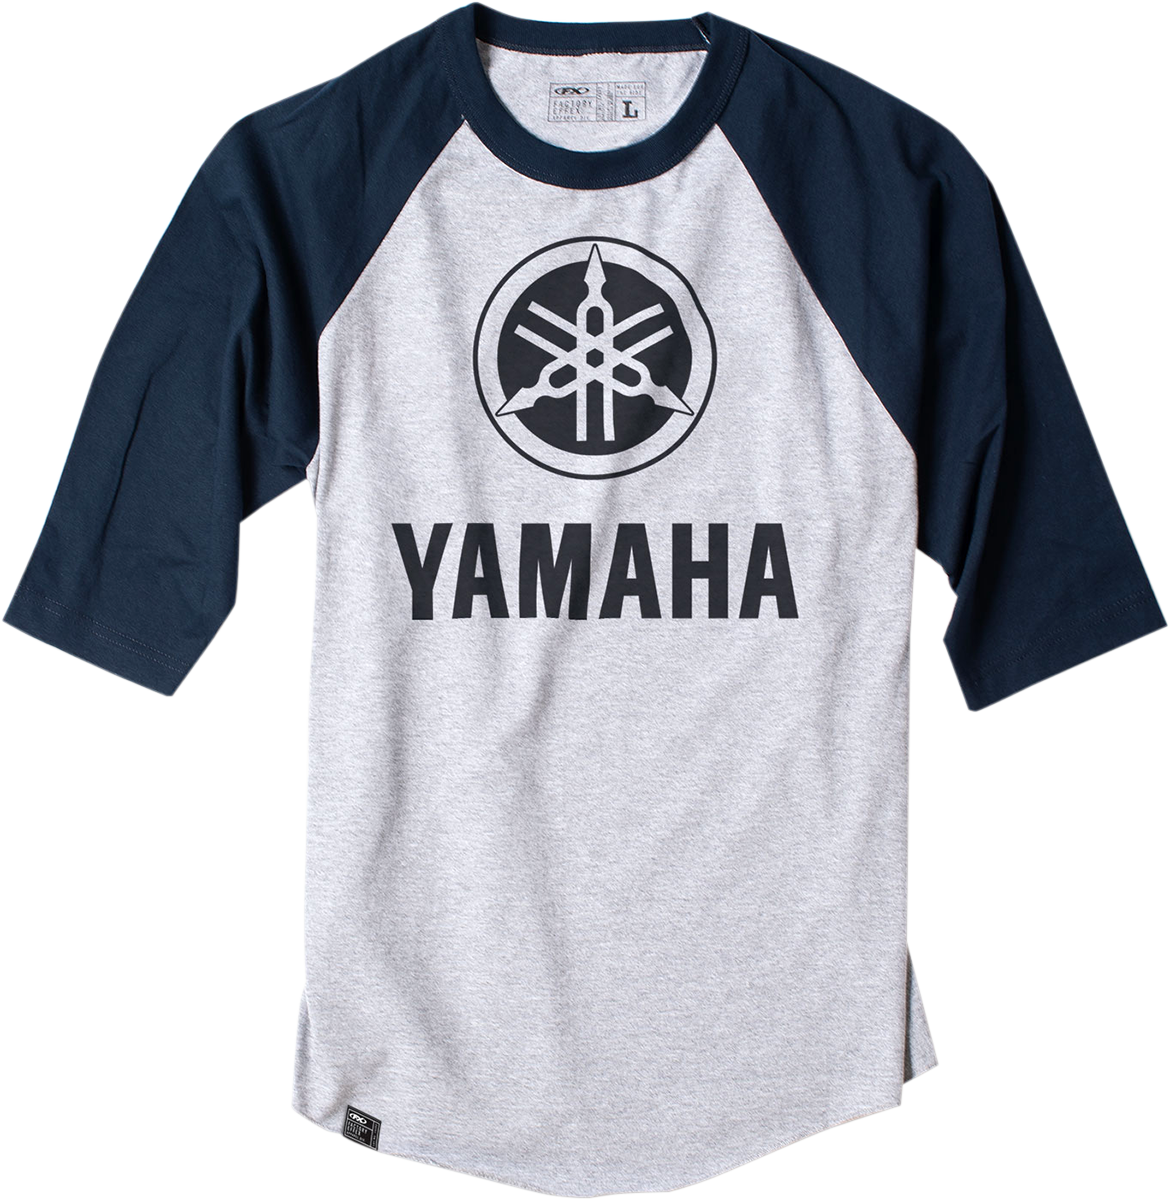 FACTORY EFFEX Yamaha Baseball T-Shirt - Grey/Blue - Large 17-87224